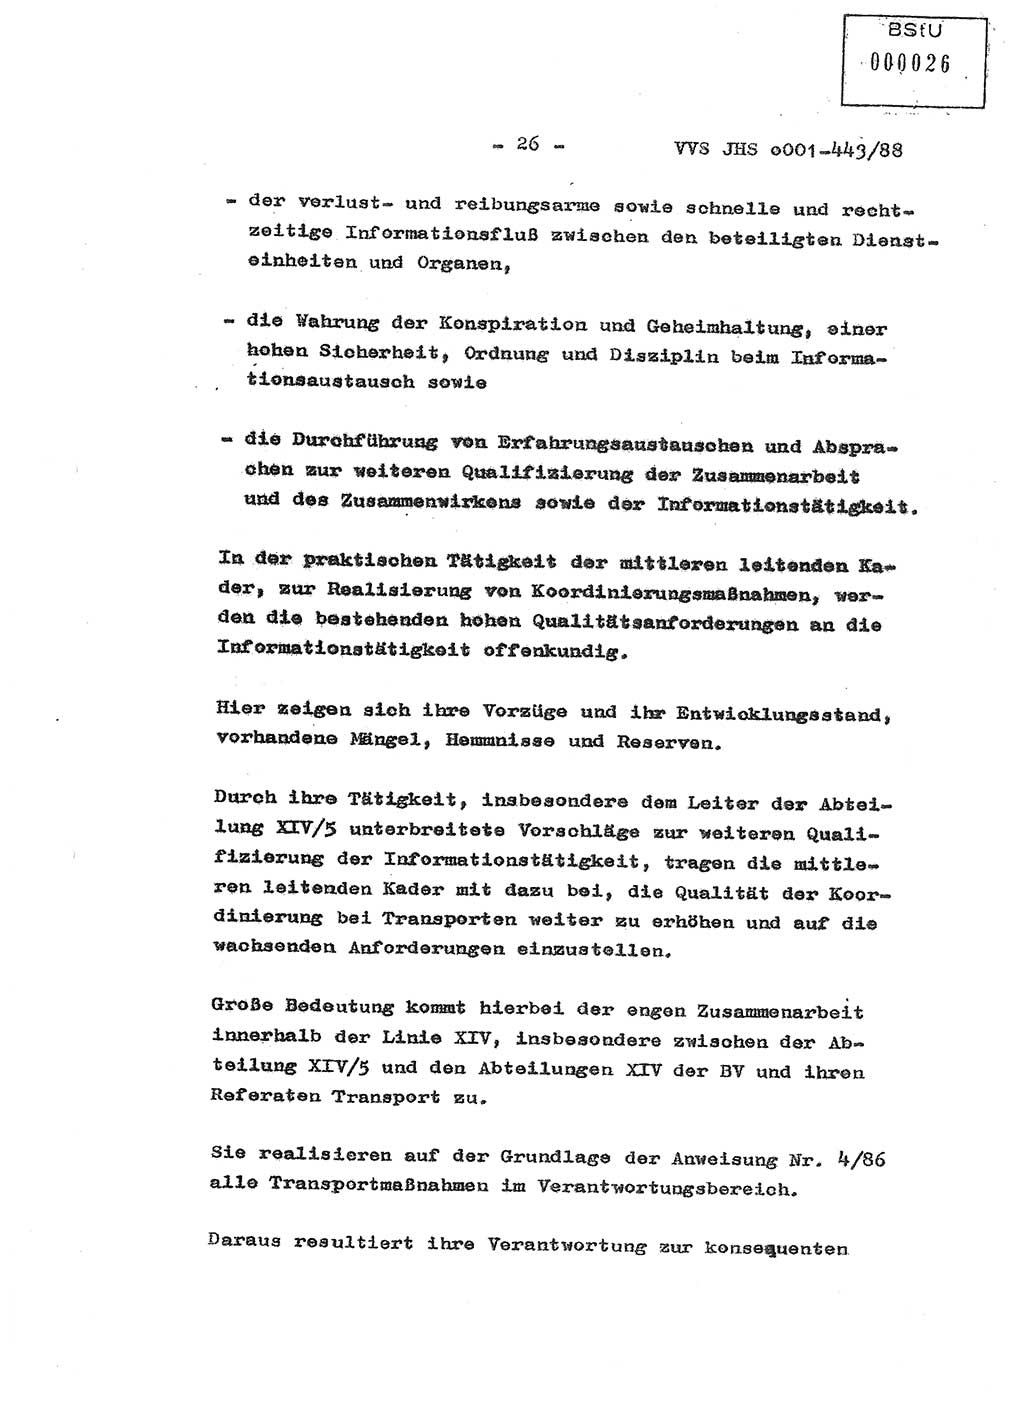 Diplomarbeit Hauptmann Michael Rast (Abt. ⅩⅣ), Major Bernd Rahaus (Abt. ⅩⅣ), Ministerium für Staatssicherheit (MfS) [Deutsche Demokratische Republik (DDR)], Juristische Hochschule (JHS), Vertrauliche Verschlußsache (VVS) o001-443/88, Potsdam 1988, Seite 26 (Dipl.-Arb. MfS DDR JHS VVS o001-443/88 1988, S. 26)